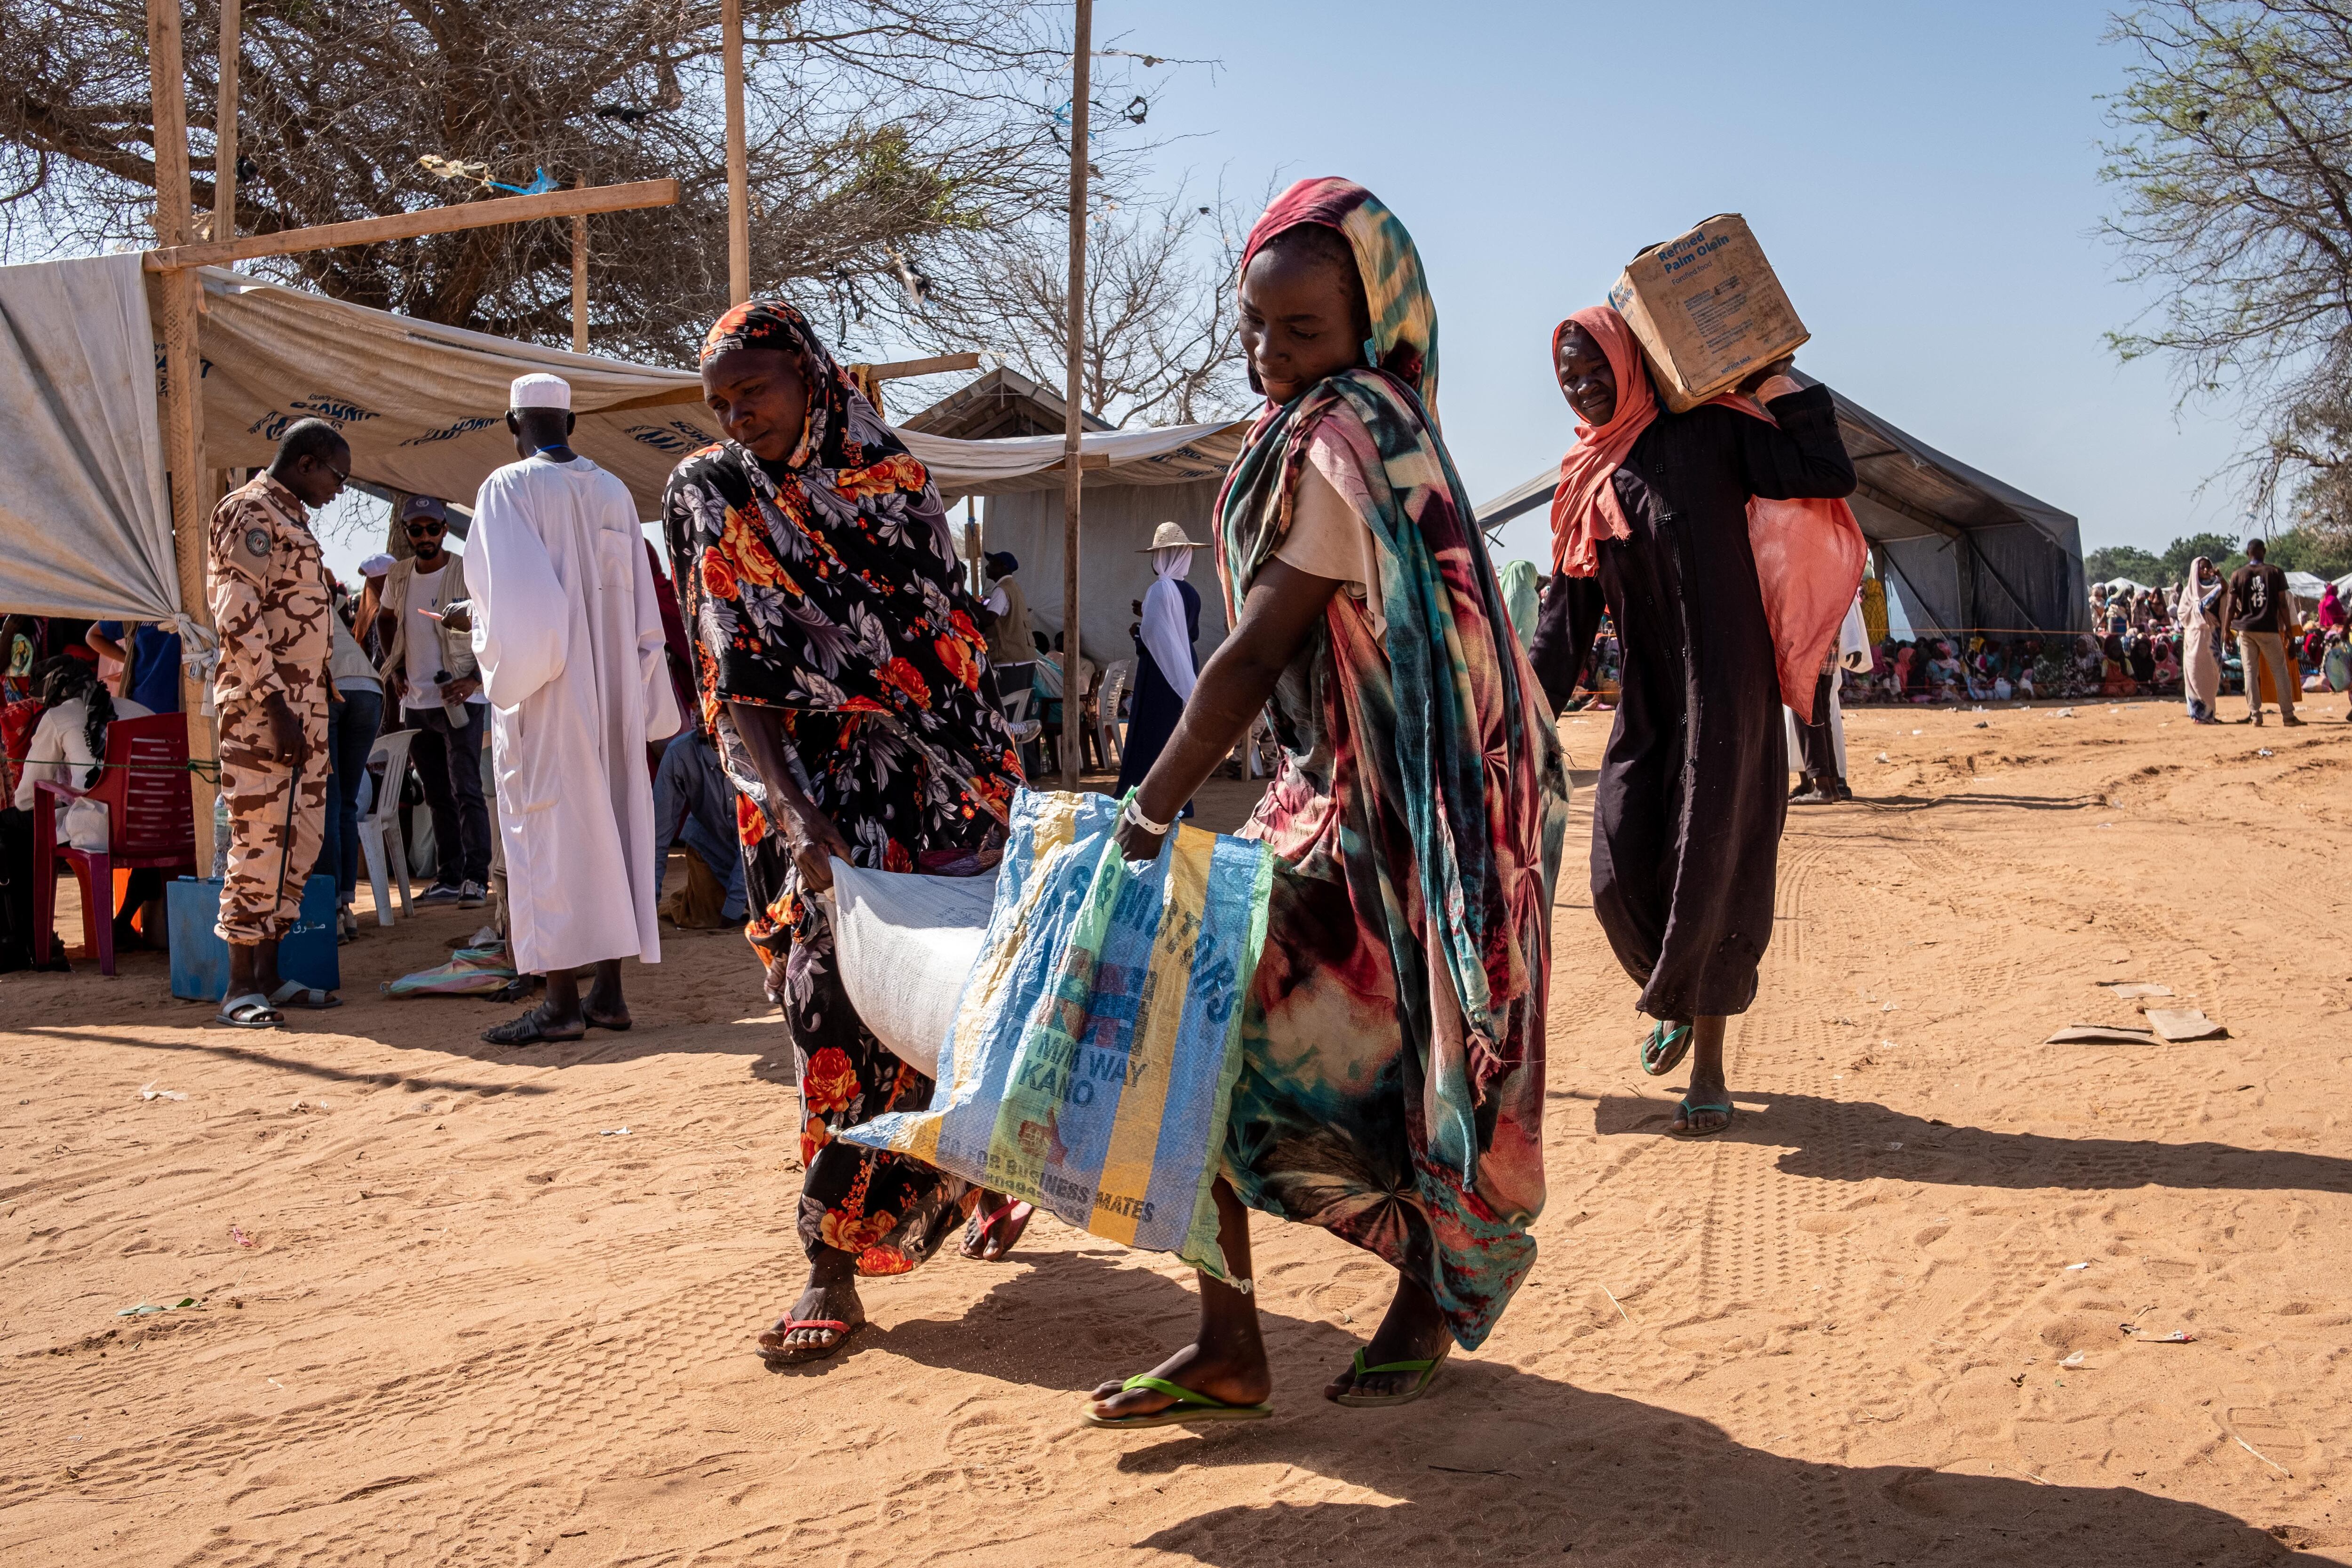 Muchas personas del campo en Chad dependen de la ayuda alimentaria. Soldados chadianos equipados con látigos están listos para intervenir en caso de disturbios en las esperas de la distribución de comida. Las filas revelan la composición del campamento, compuesto principalmente por mujeres y niños, pues para muchos hombres masalit el viaje a Adré es demasiado peligroso.